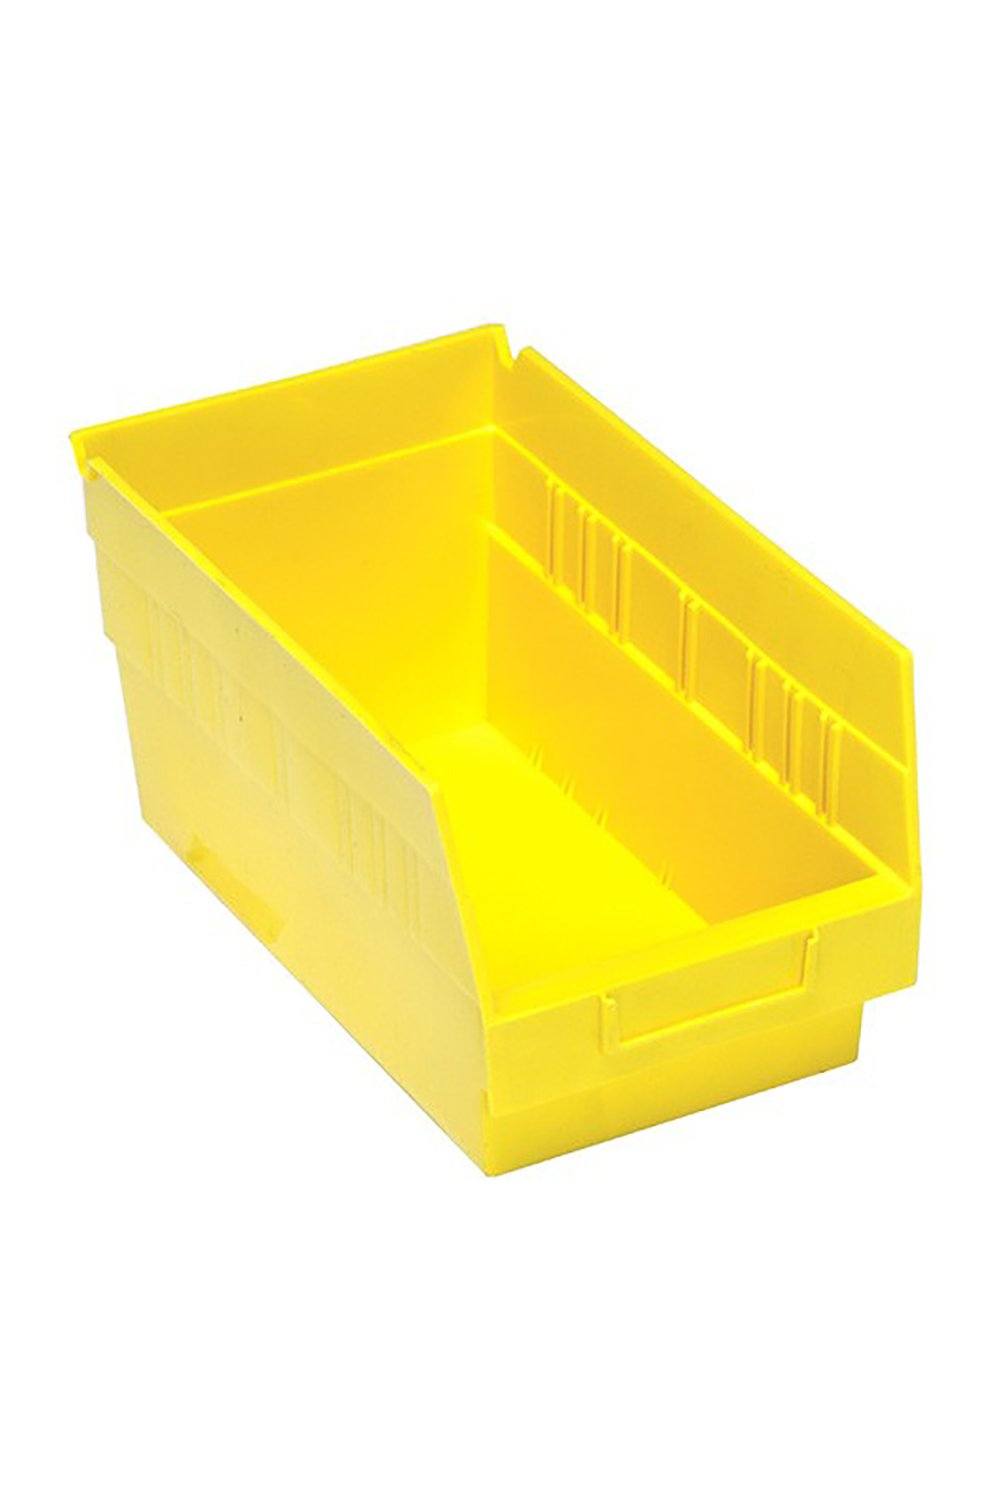 Shelf Bin for 12"D Shelves Bins & Containers Acart 11-5/8'' x 6-5/8'' x 6'' Yellow 